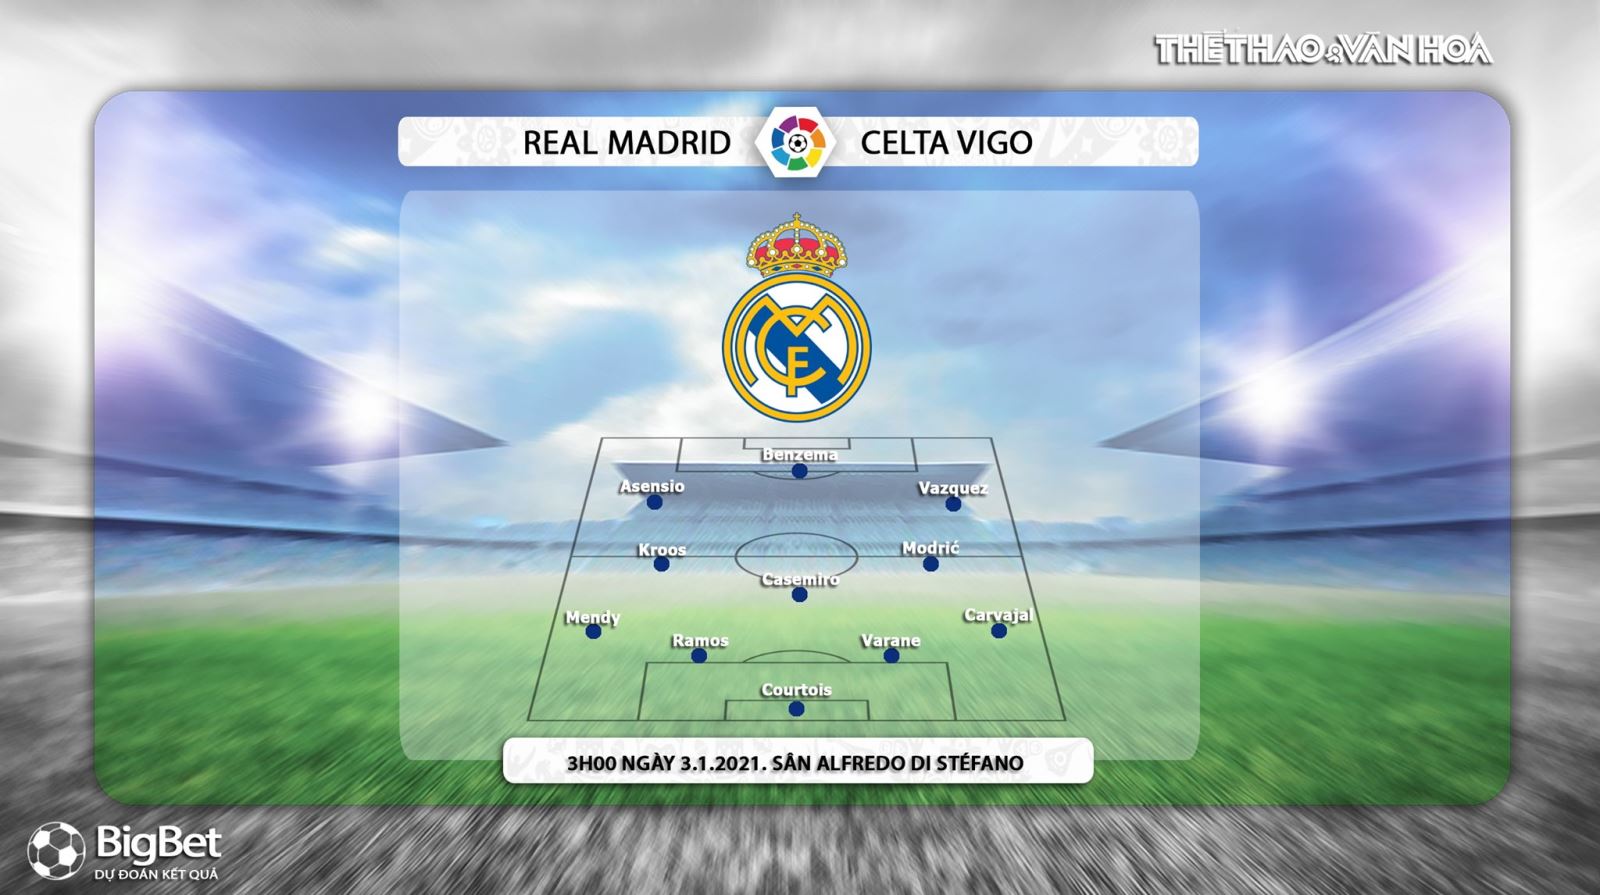 Keo nha cai, Nhận định kết quả, Real Madrid vs Celta Vigo, Trực tiếp bóng đá TBN hôm nay, BĐTV, nhận định bóng đá bóng đá Celta Vigo đấu với Real Madrid, trực tiếp bóng đá La Liga